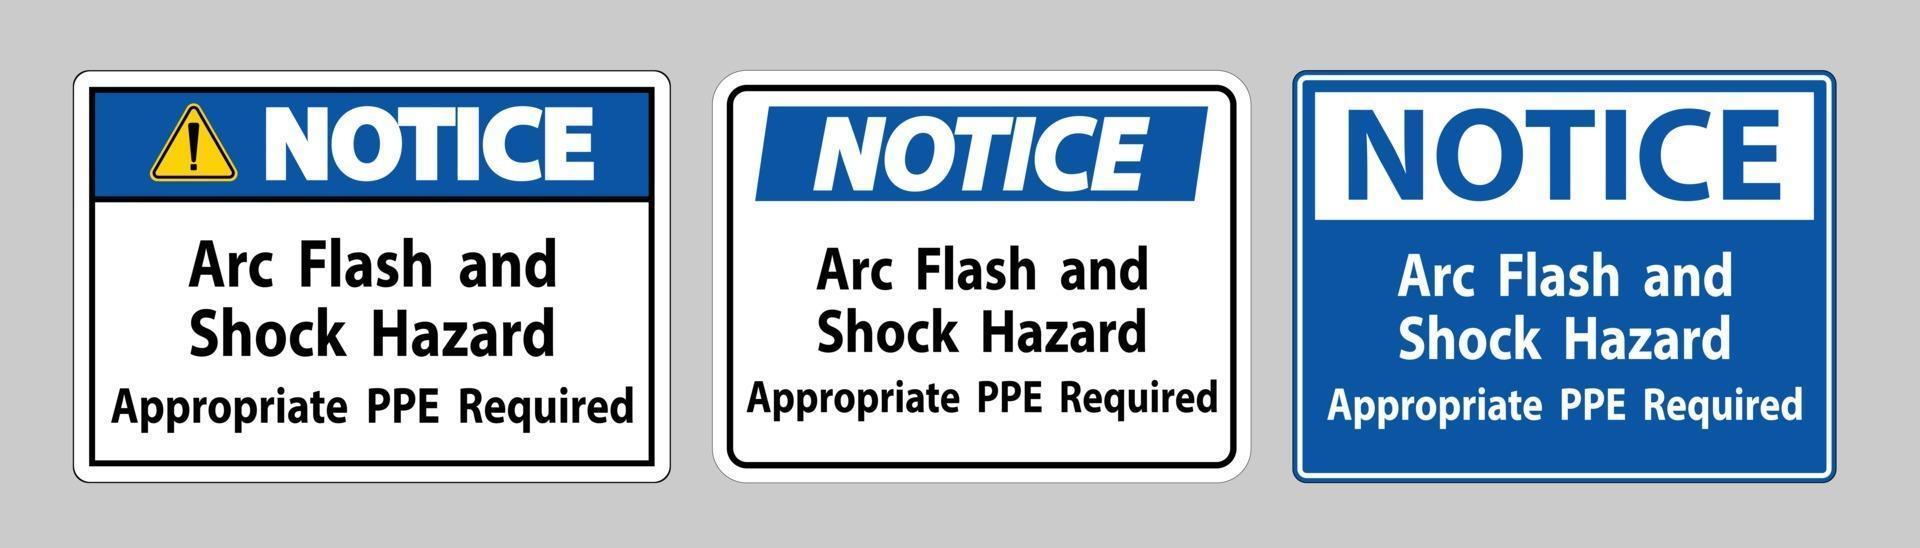 señal de aviso peligro de descarga eléctrica y arco eléctrico se requiere ppe apropiado vector